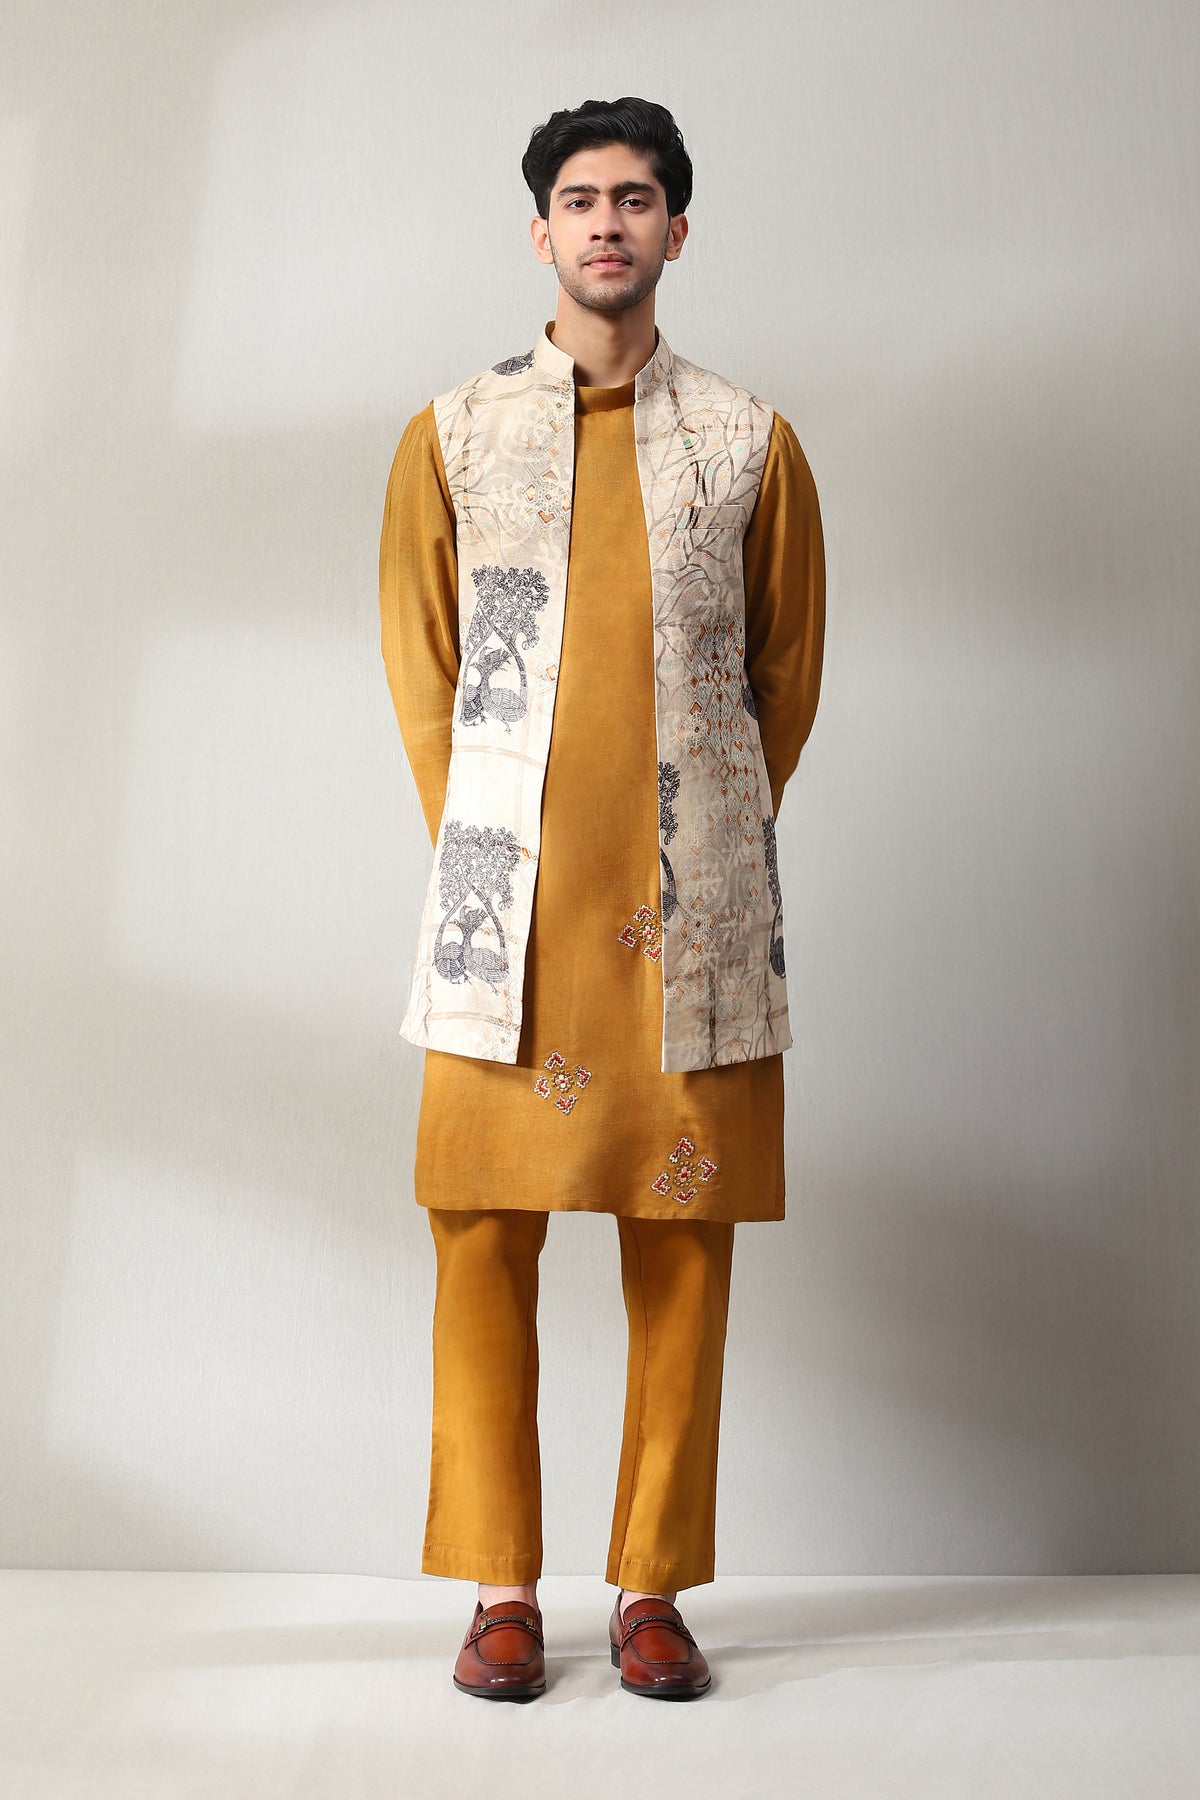 This mustard handmade printed kurta payjama